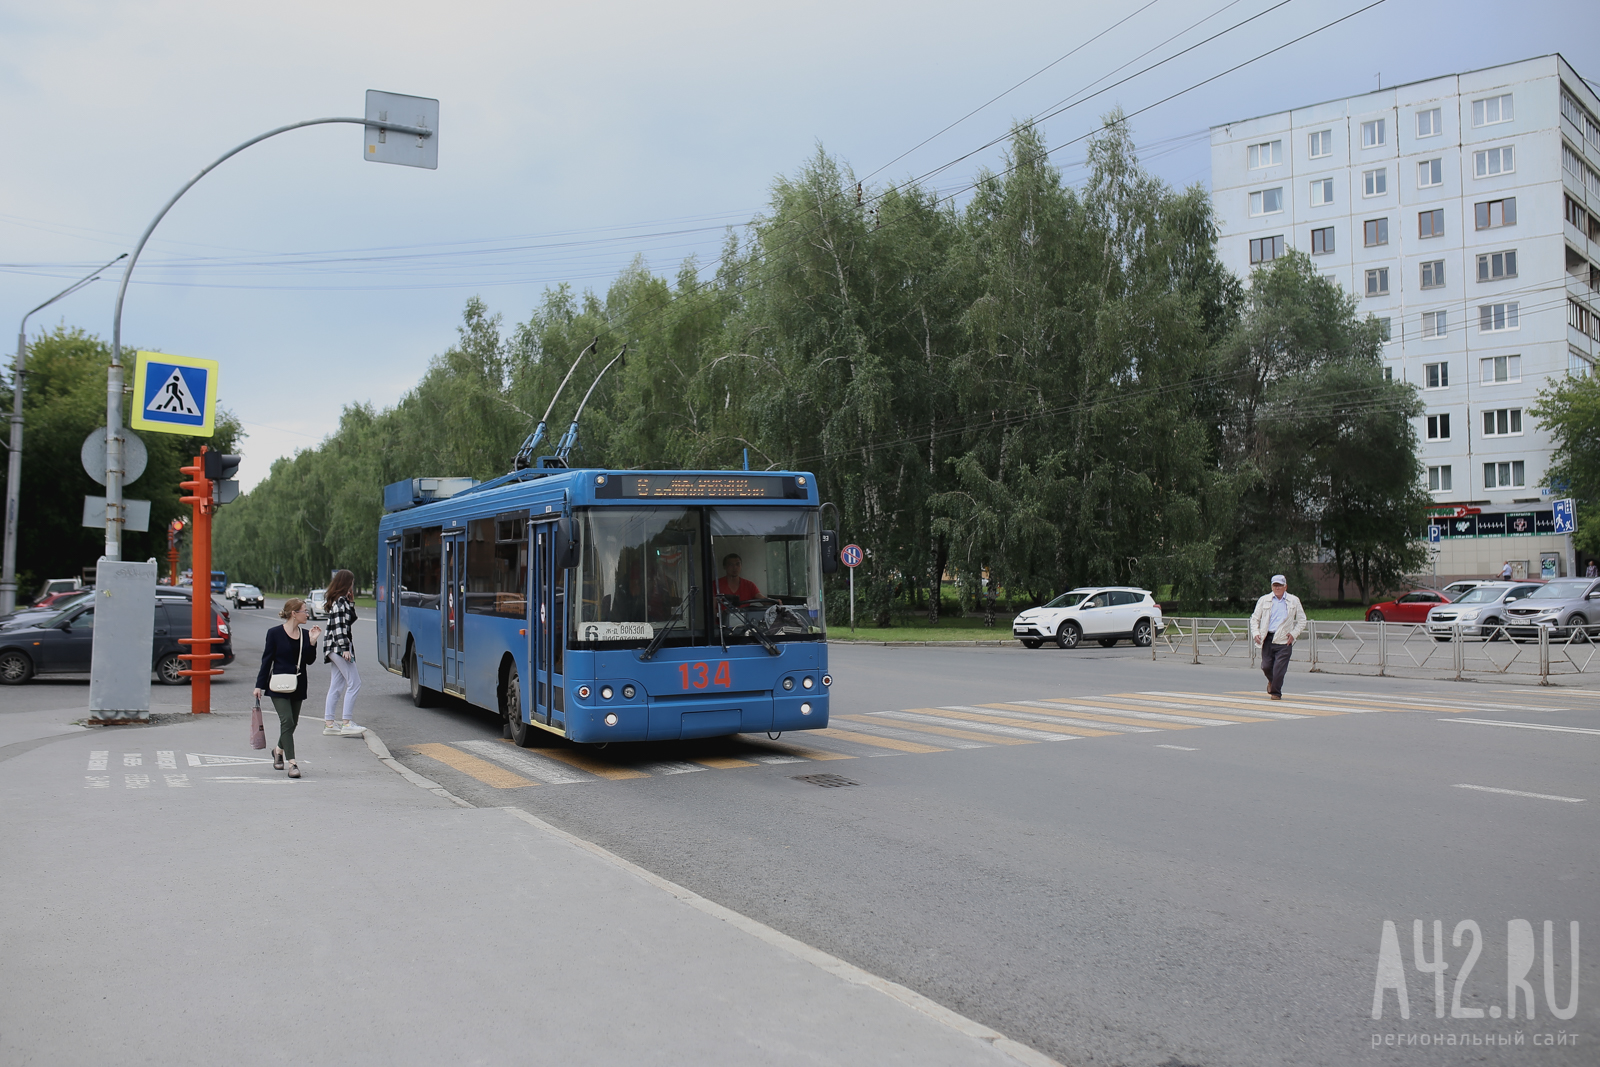 Тонированные стёкла и видеонаблюдение: к середине августа в Кемерово поставят 10 новых троллейбусов с автономным 